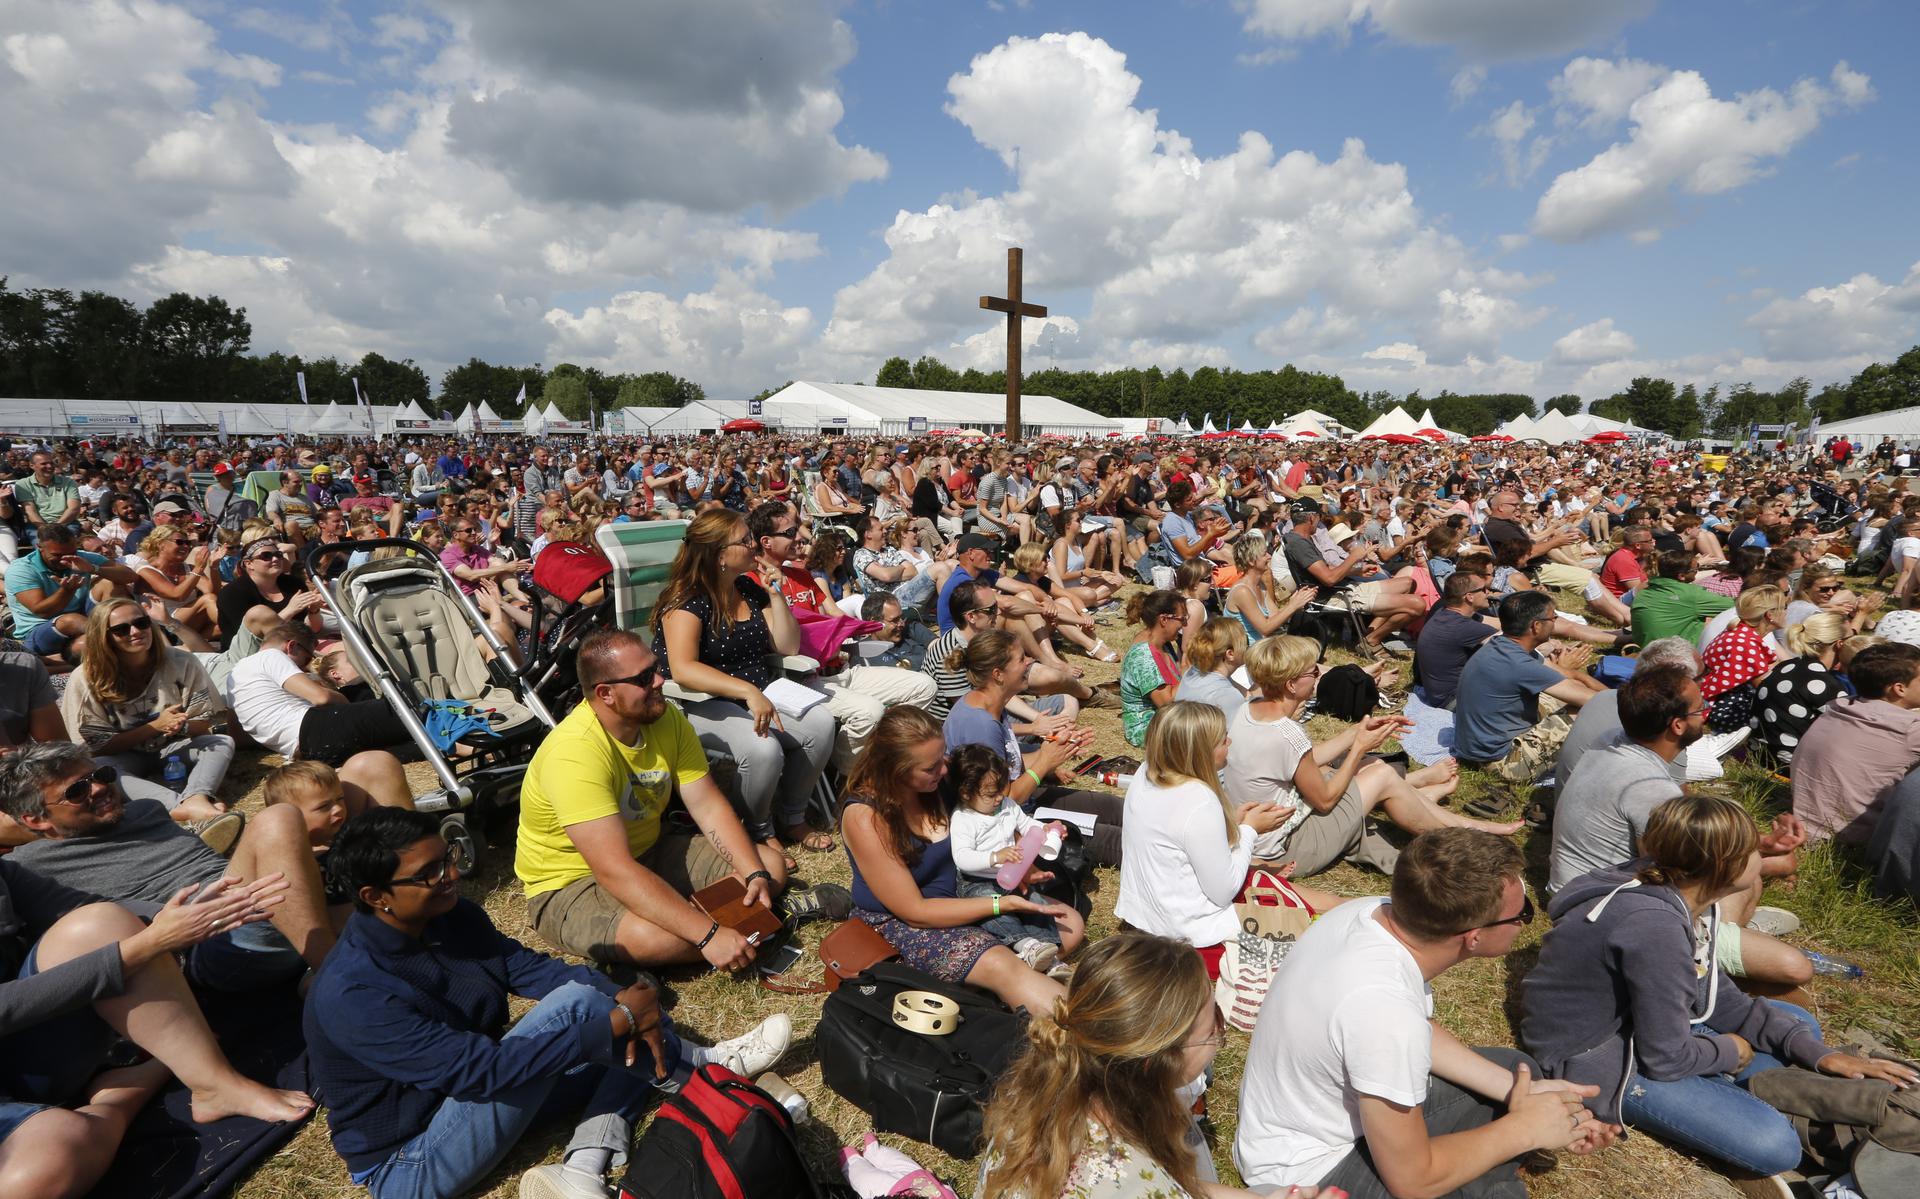 De pinksterconferentie Opwekking is het grootste christelijke evenement van Nederland. 